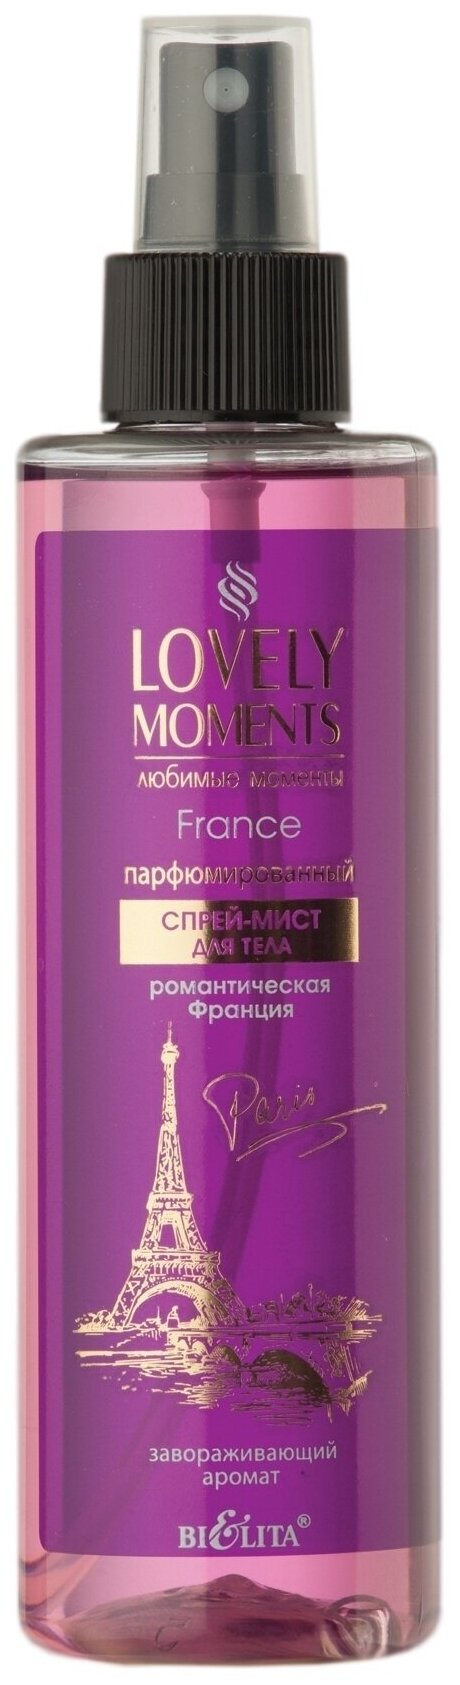 Спрей для тела Белита Спрей-мист для тела парфюмированный Романтическая Франция Lovely Moments - Белорусская косметика